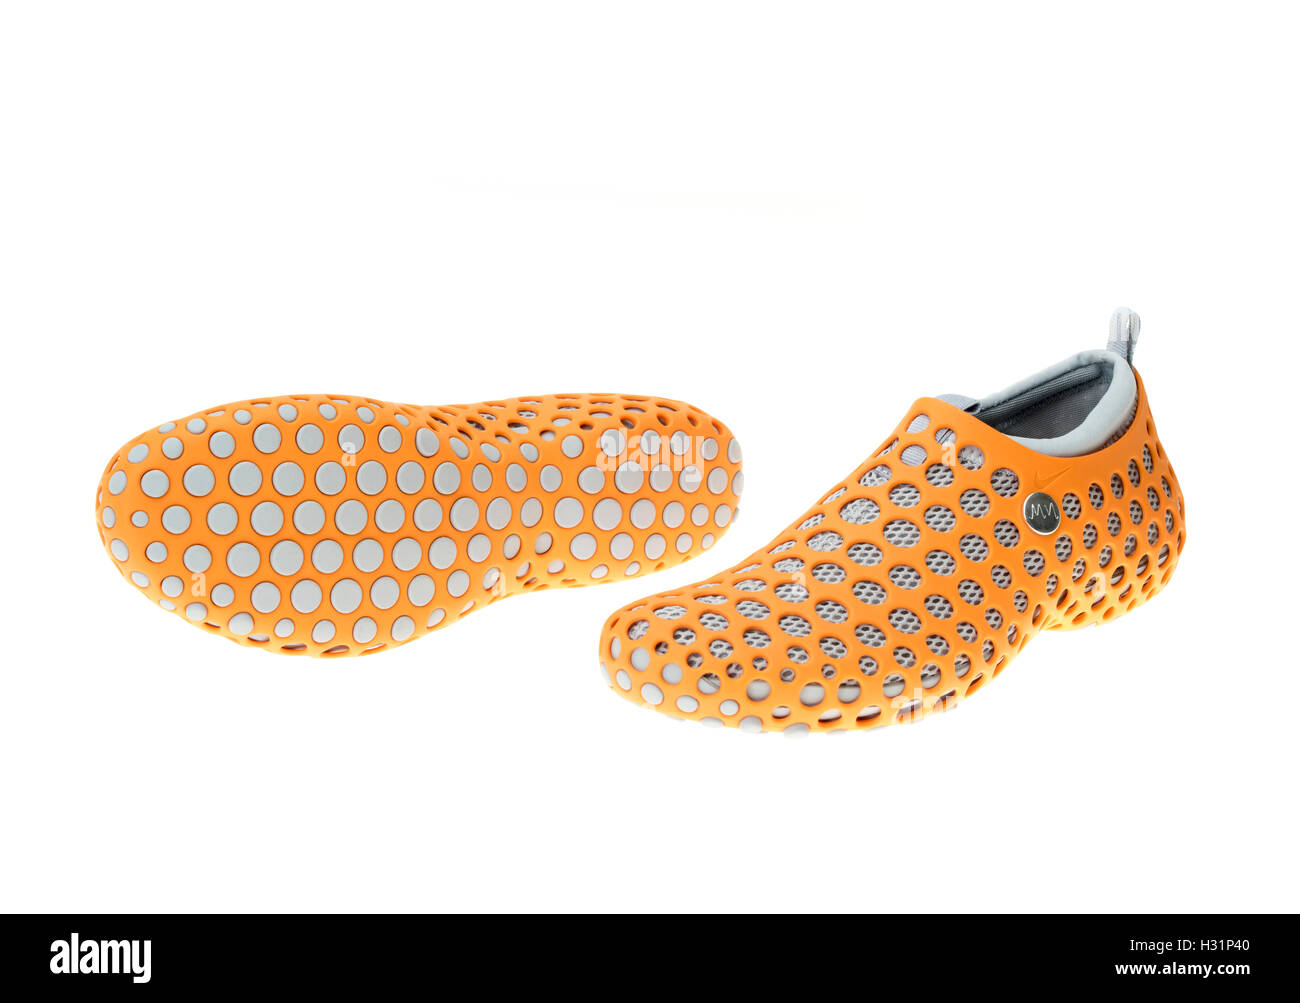 Calzado deportivo Nike ZVEZDOCHKA por diseñador industrial Marc Newson  Fotografía de stock - Alamy